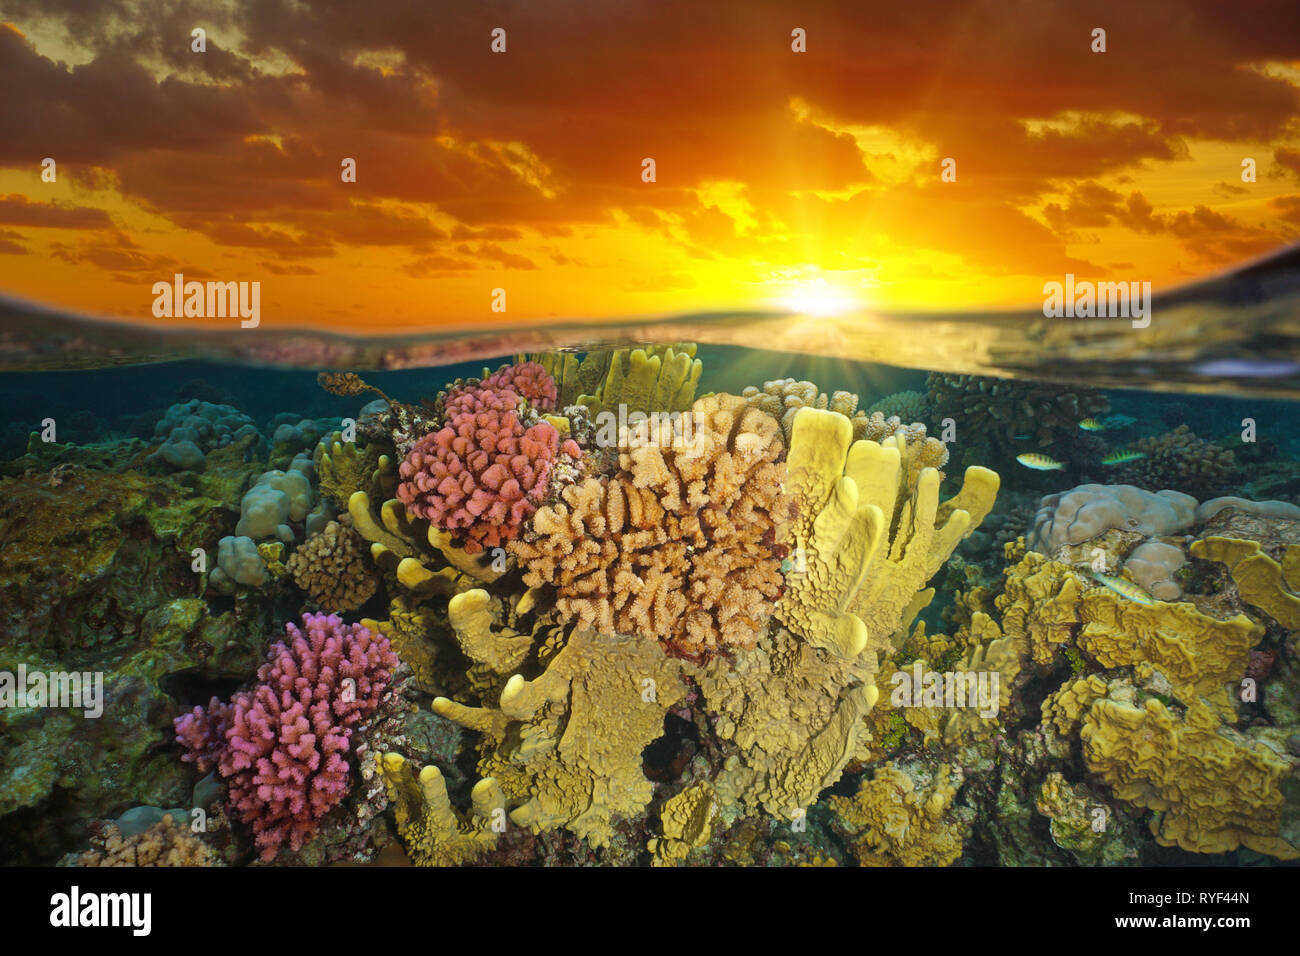 Ciel avec le coucher du soleil et d'un récif de corail coloré sous l'eau, moitié sur l'affichage fractionné et sous l'eau, l'océan Pacifique, Polynésie Française Banque D'Images